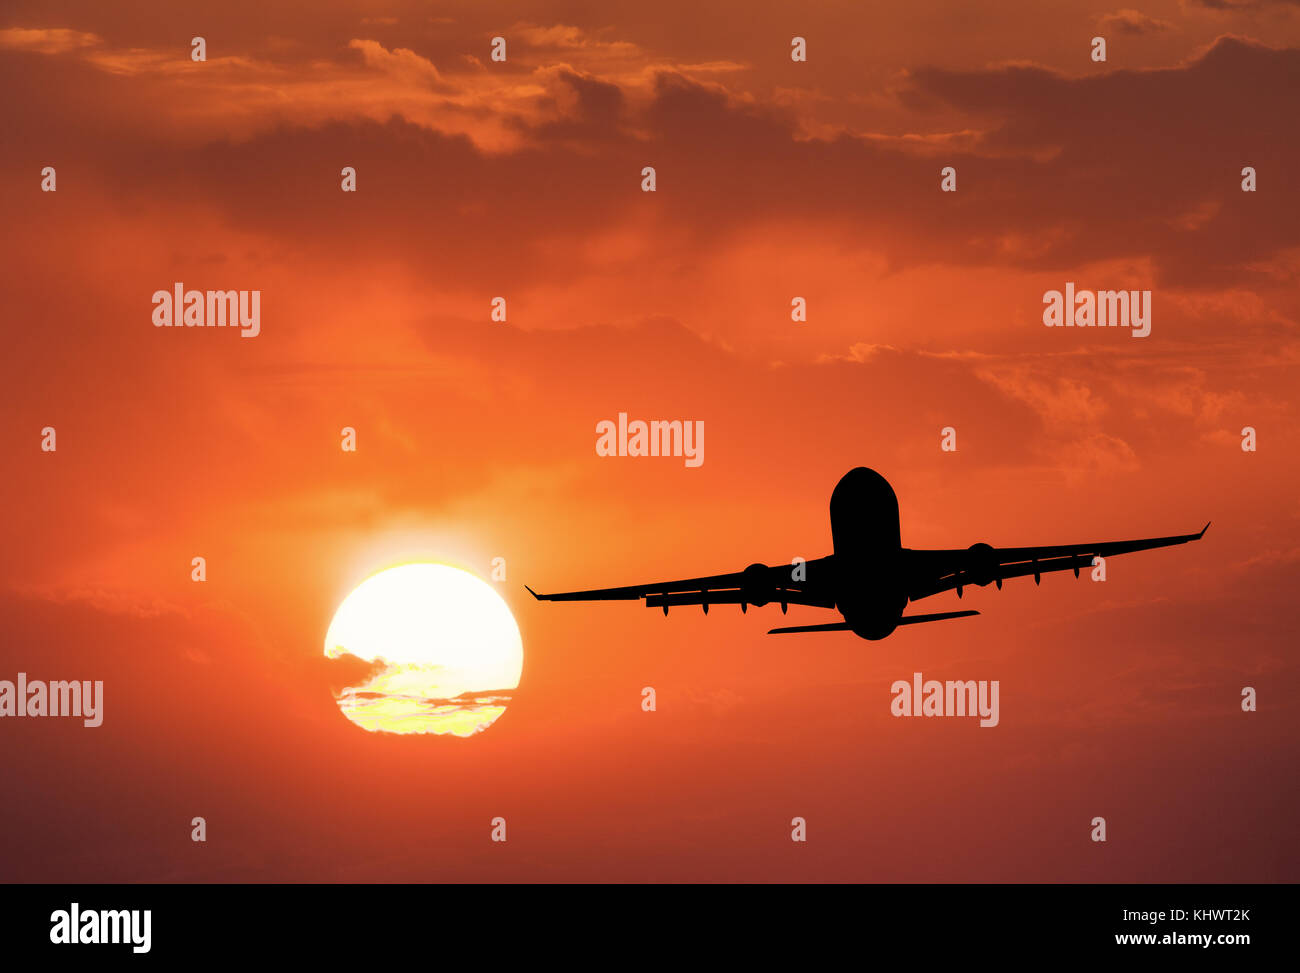 Silhouette de l'avion et du ciel avec soleil. Paysage avec un avion de passagers est volant dans le ciel avec des nuages au coucher du soleil. Billet d'arrière-plan. Pass Banque D'Images